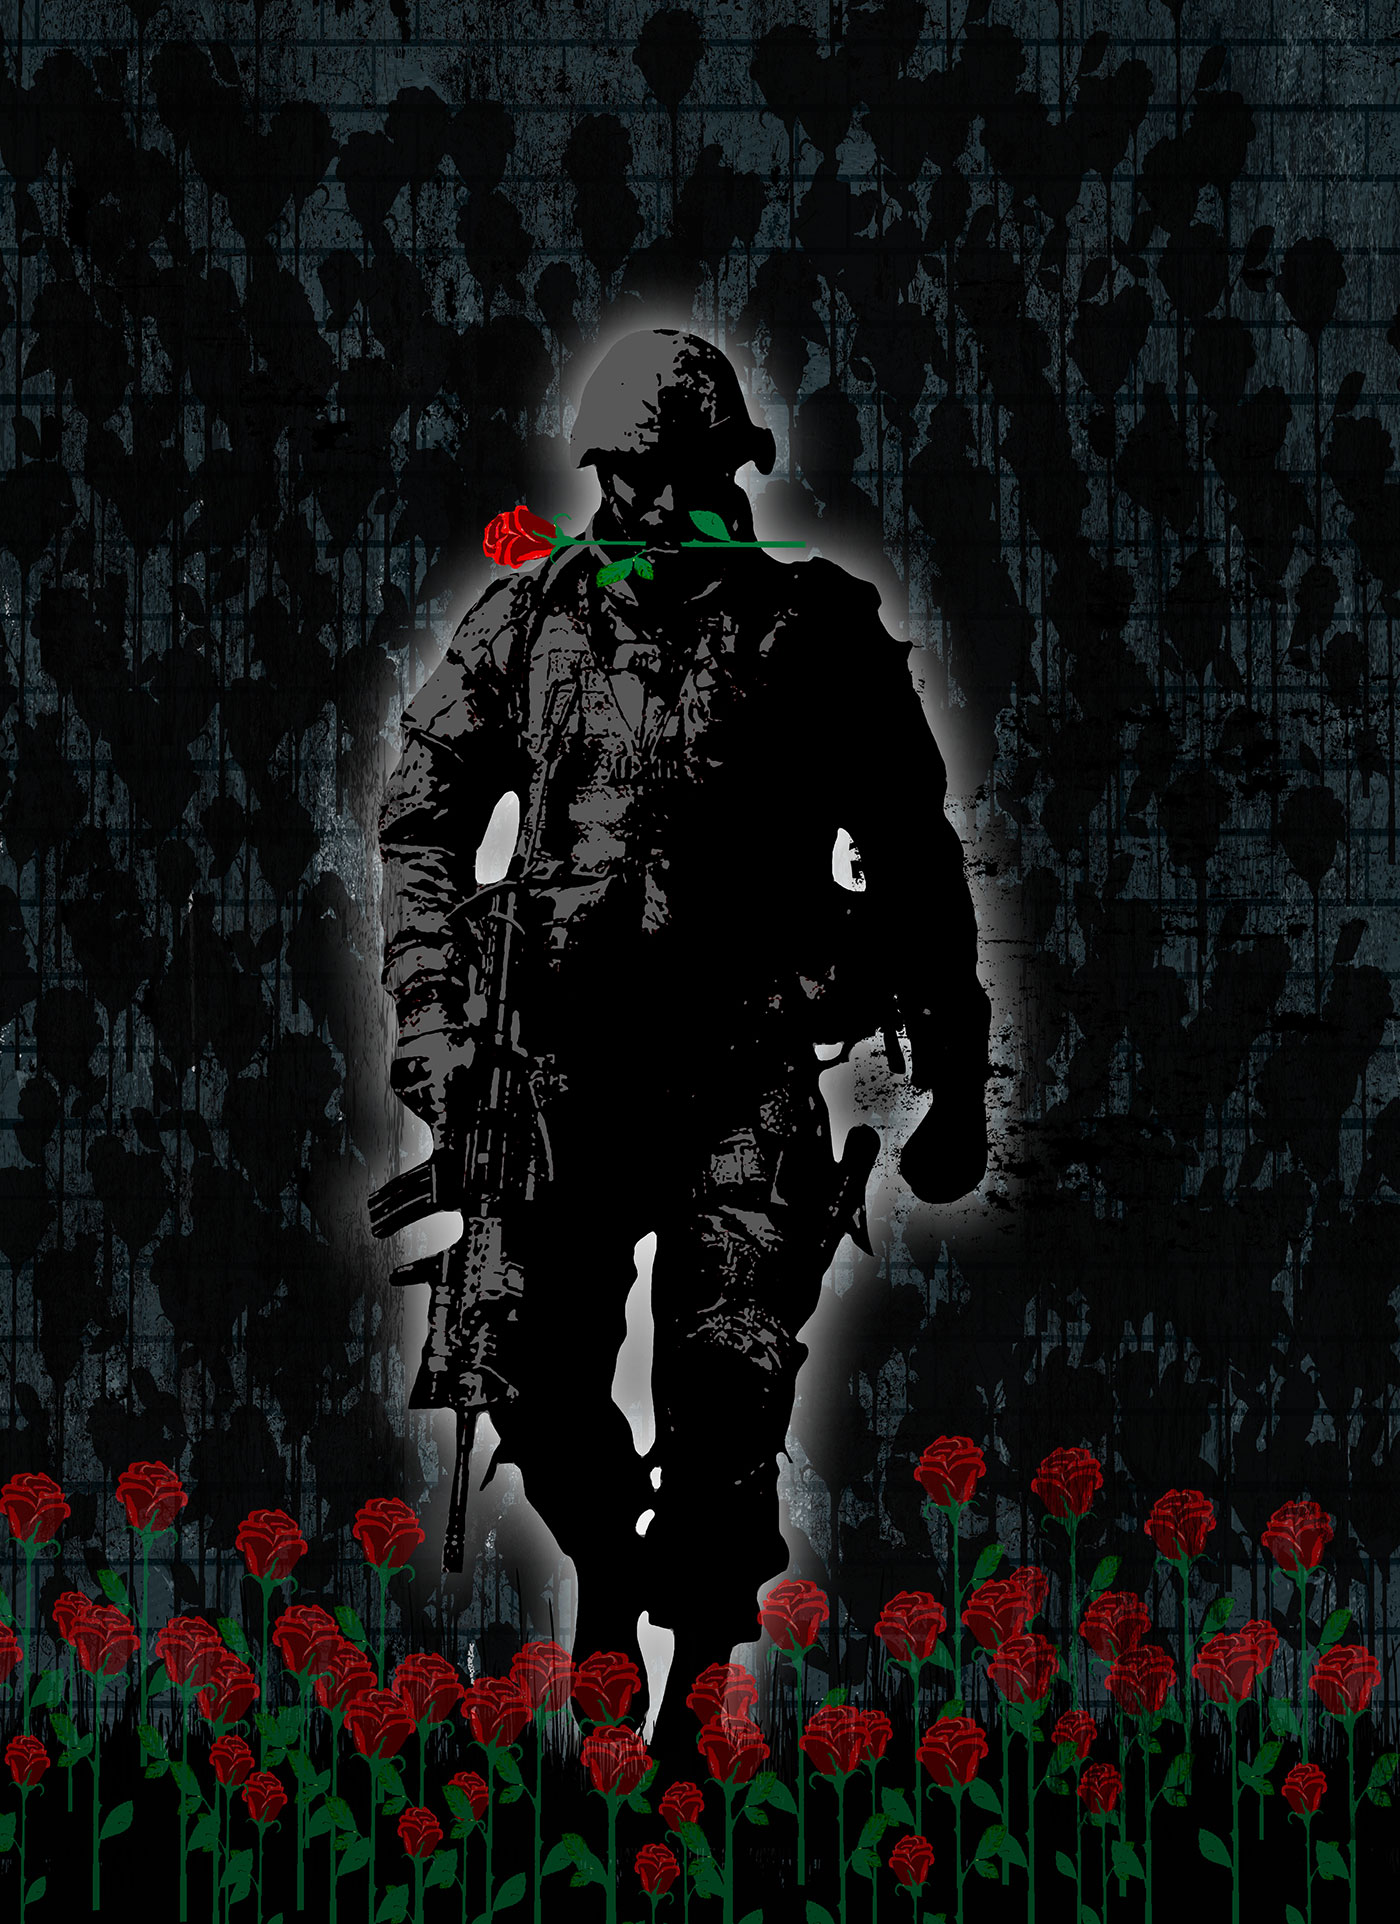 Ein Soldat läuft in einem Rosenfeld und trägt eine rote Rose zwischen seinen Lippen.